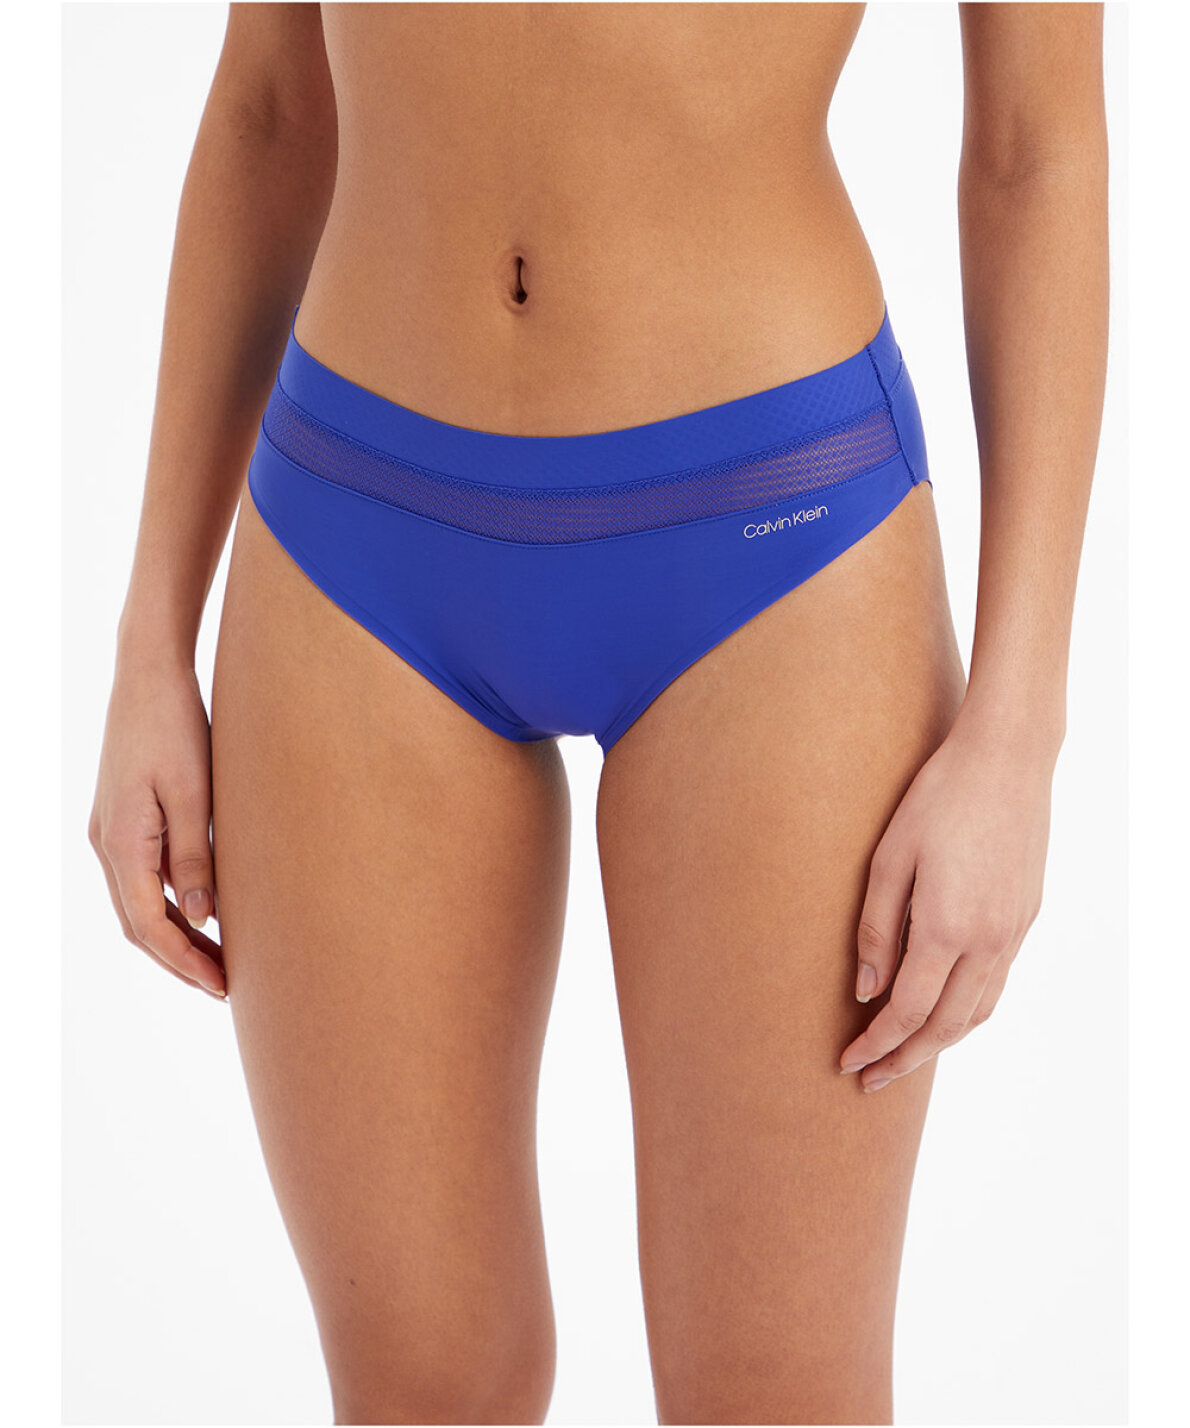 Calvin Klein Women's Perfectly Fit Flex Bikini Panty - ShopStyle Panties